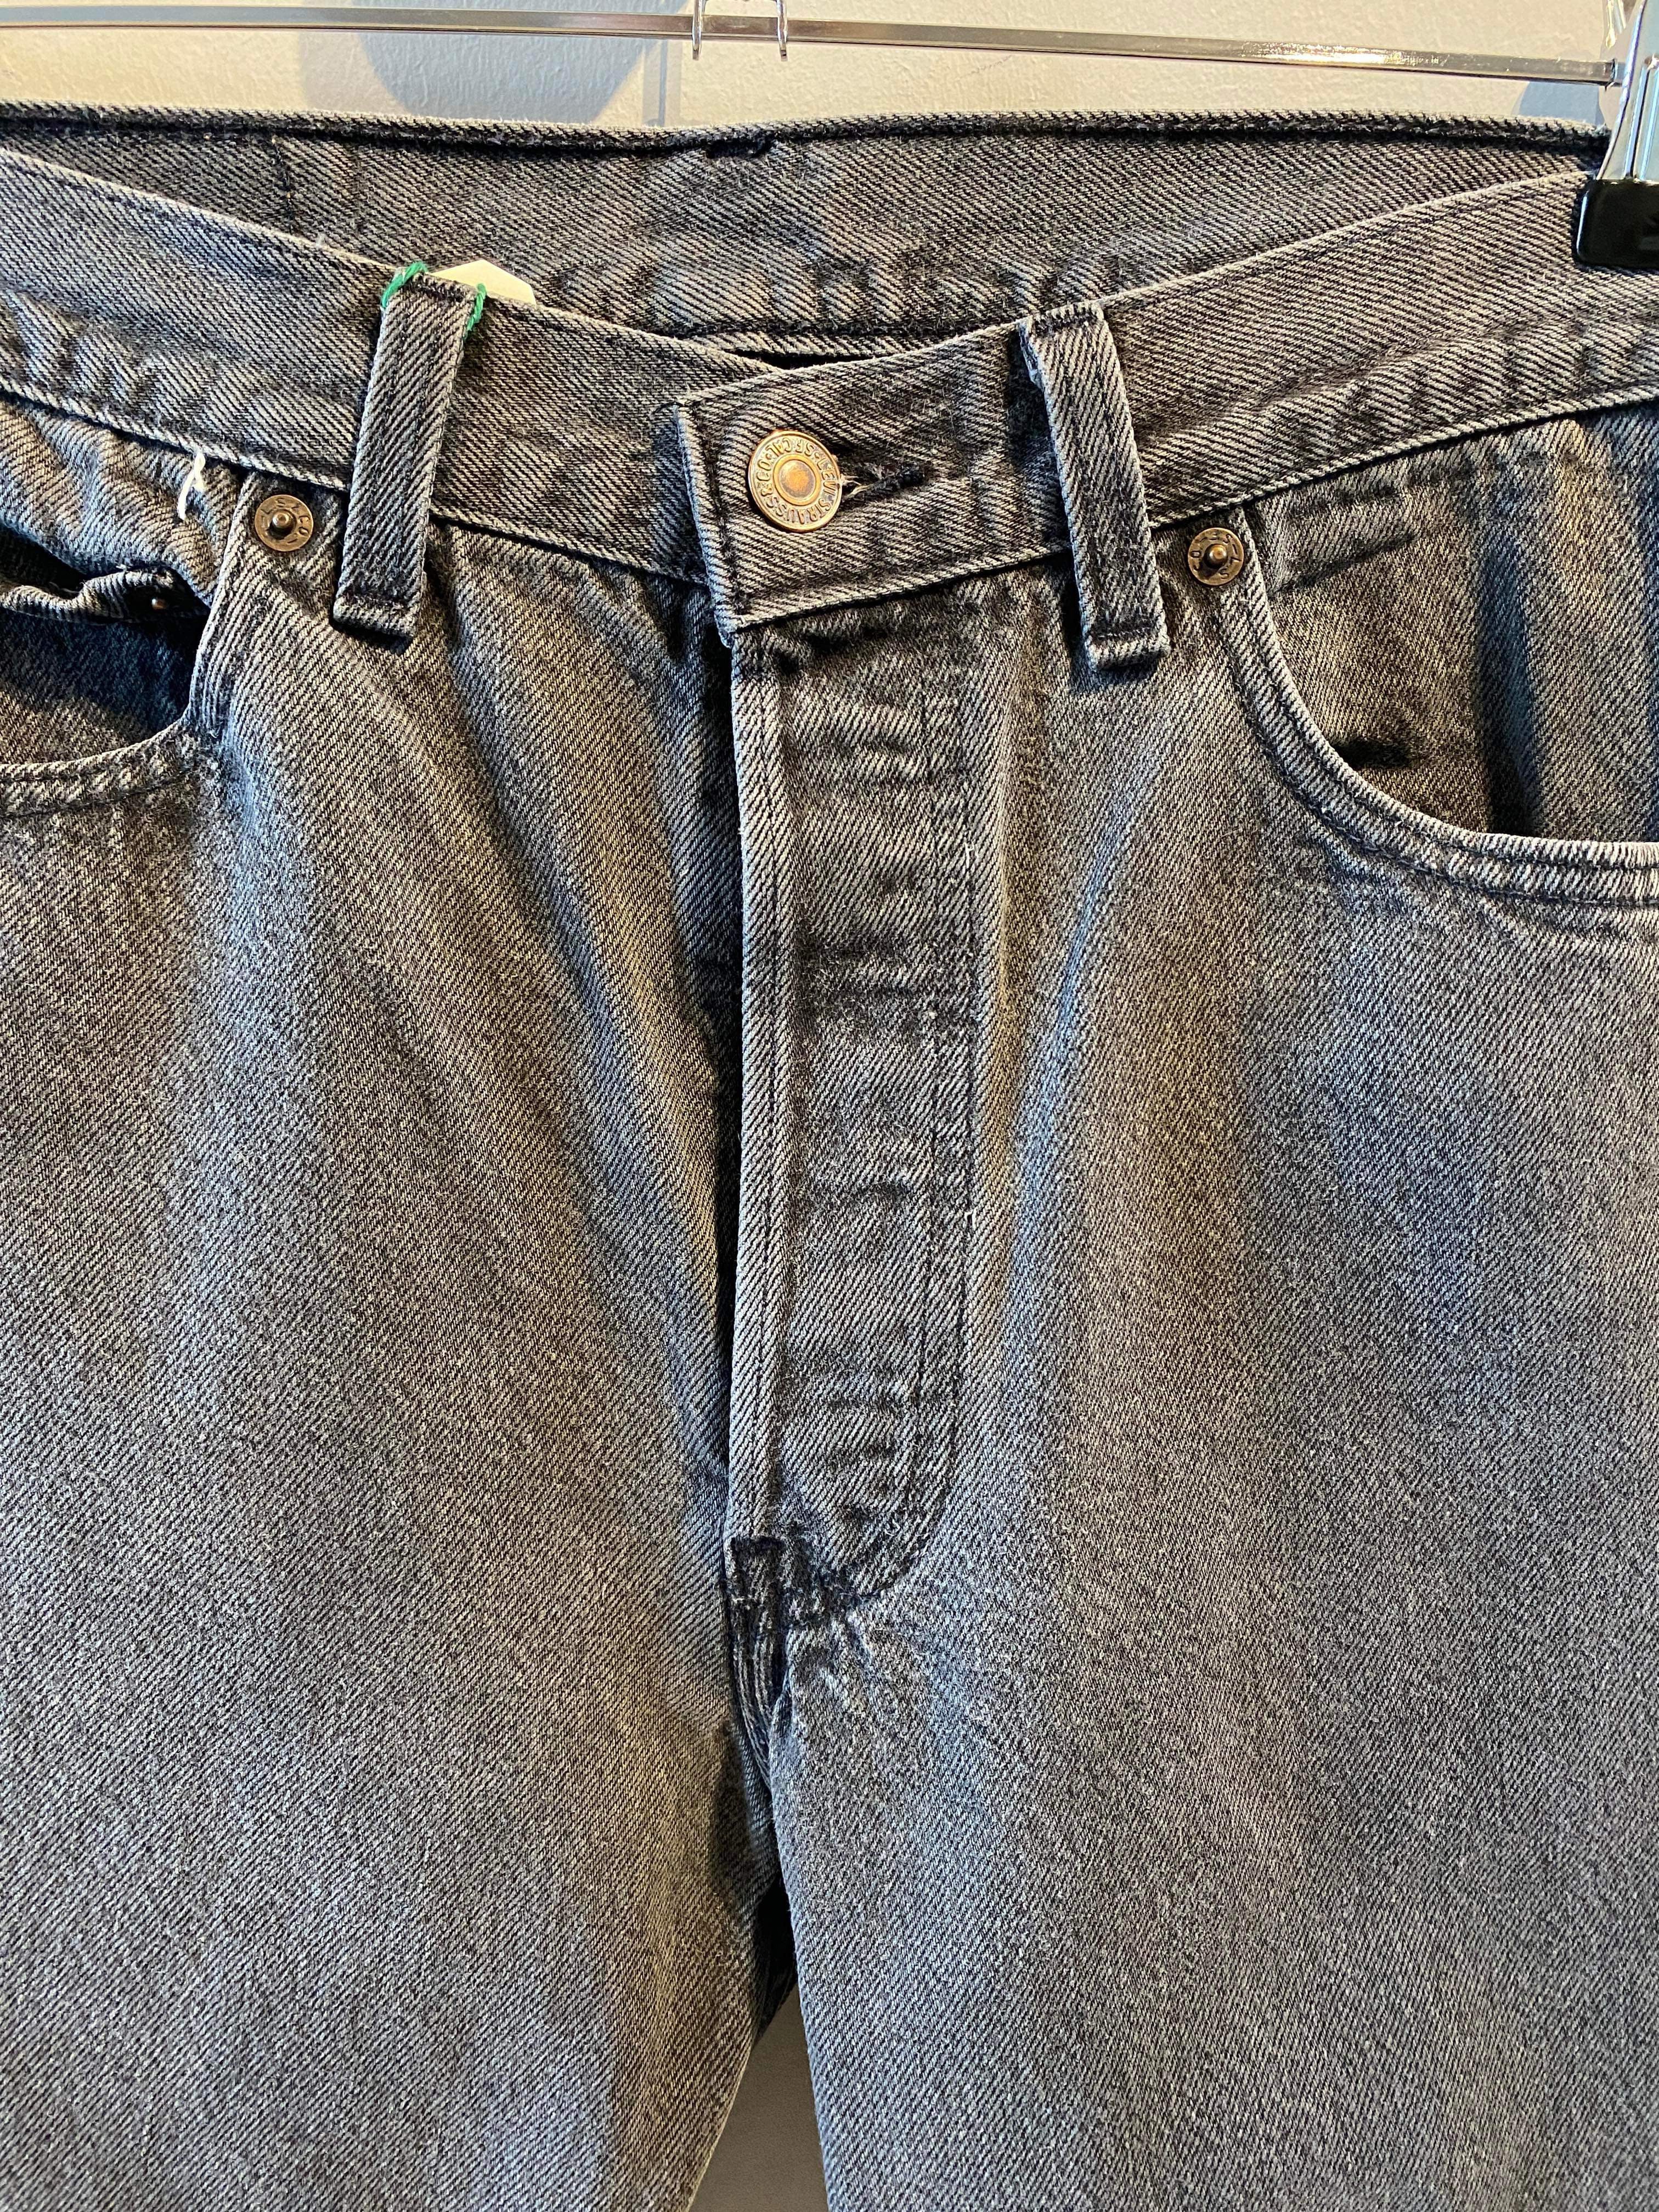 Levi's - Jeans - Size: 28